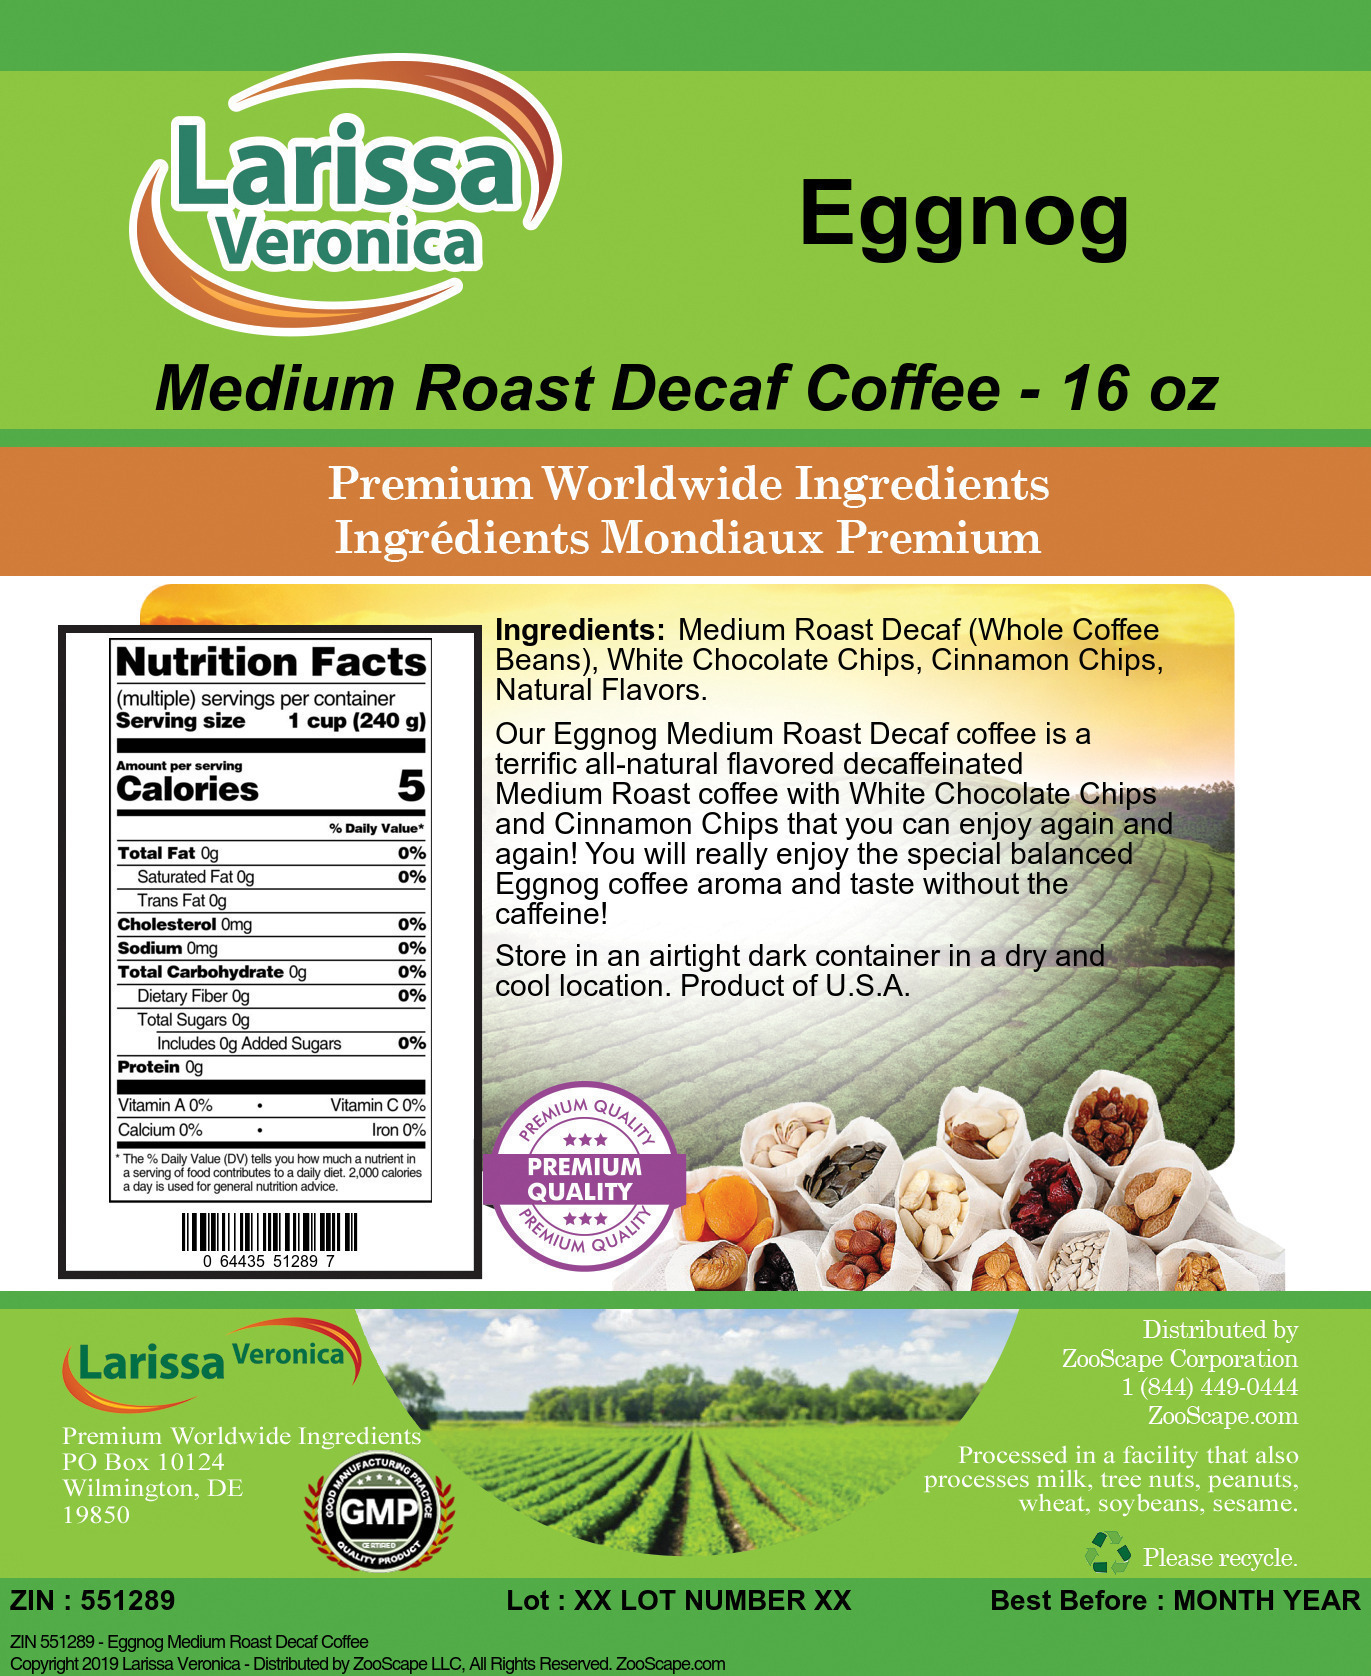 Eggnog Medium Roast Decaf Coffee - Label